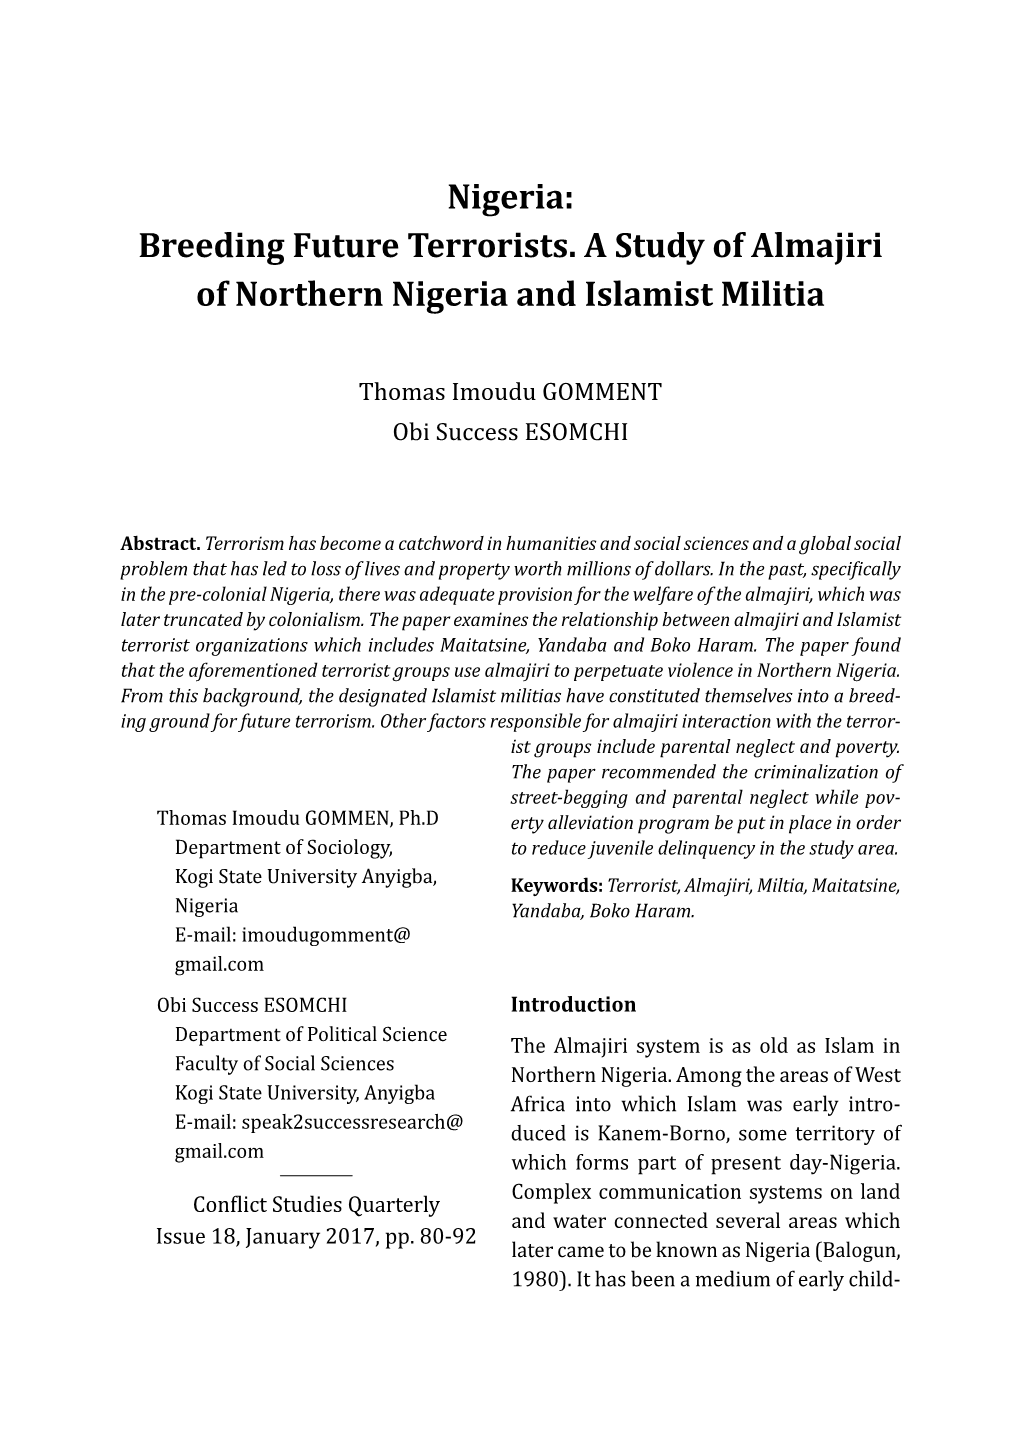 Nigeria: Breeding Future Terrorists